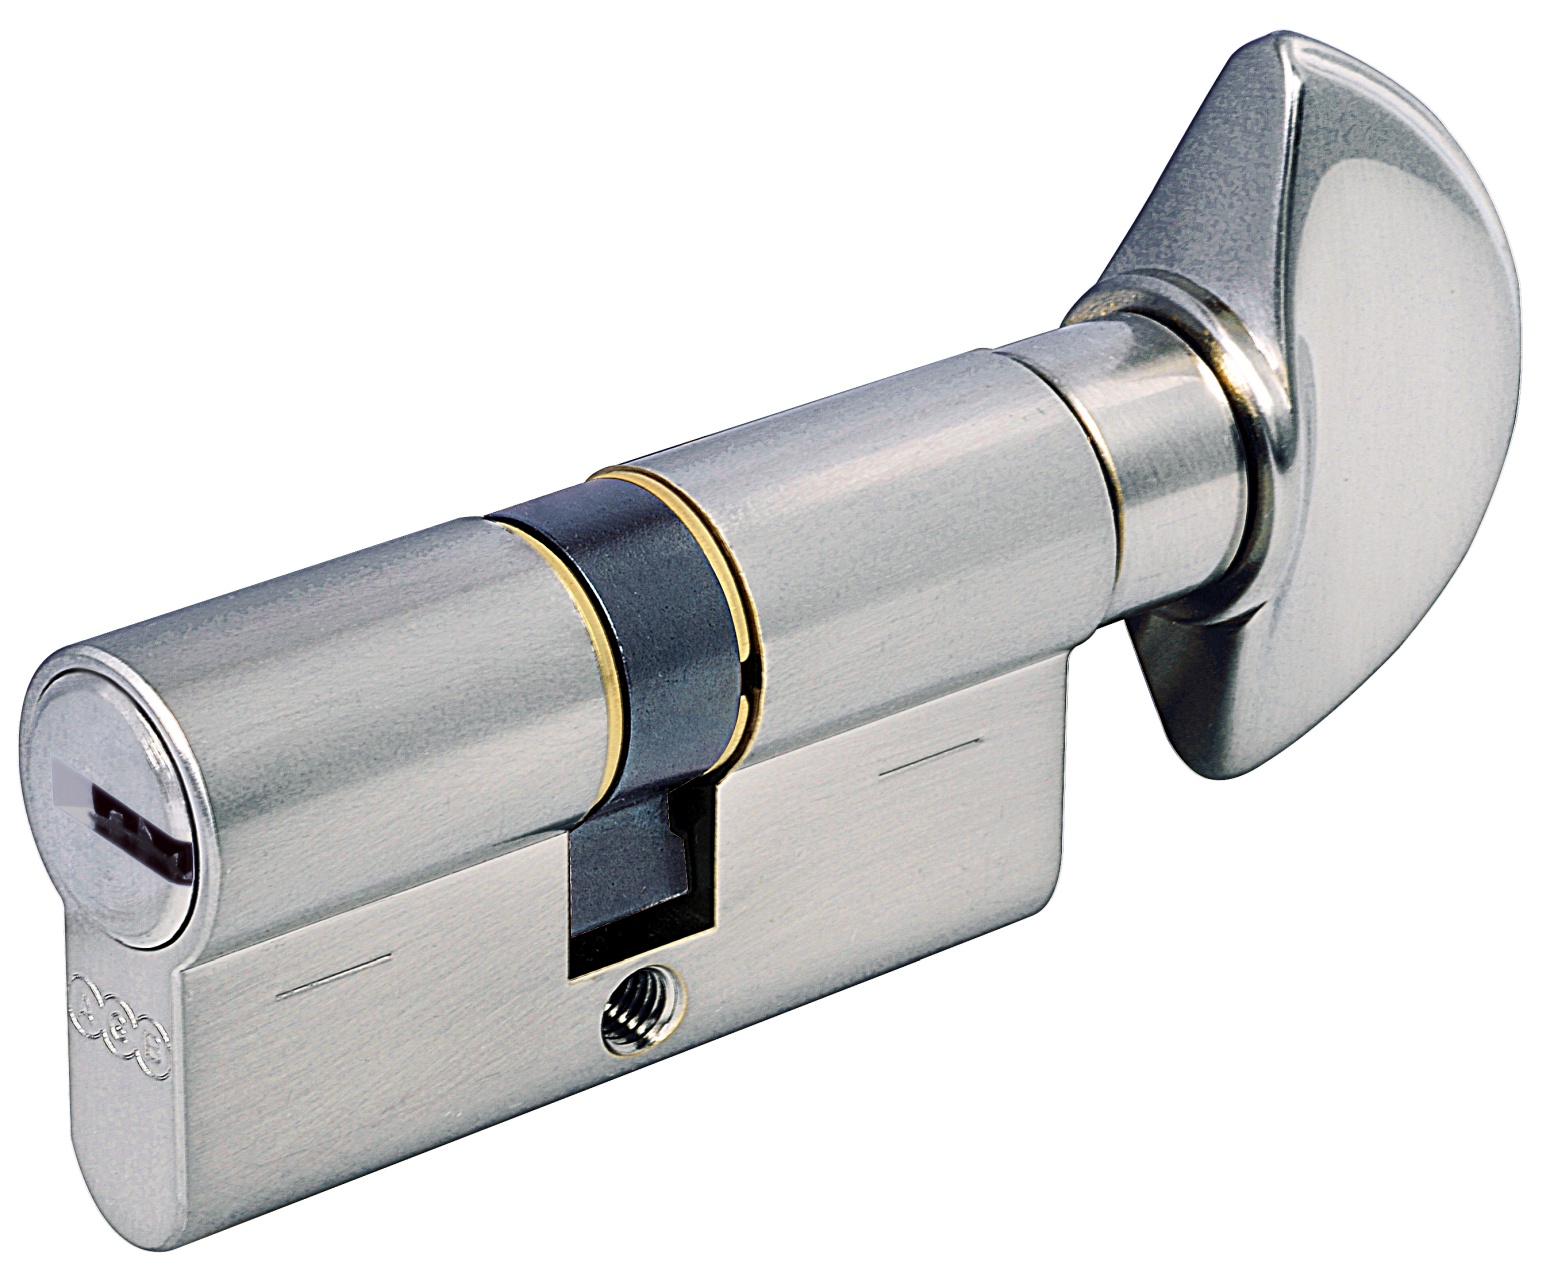 AGB -  Cilindro SCUDO 5000 PS frizionato anti bamping con chiave e pomolo - col. NICHELATO OPACO - lunghezza 95 - misura P-35-10-50